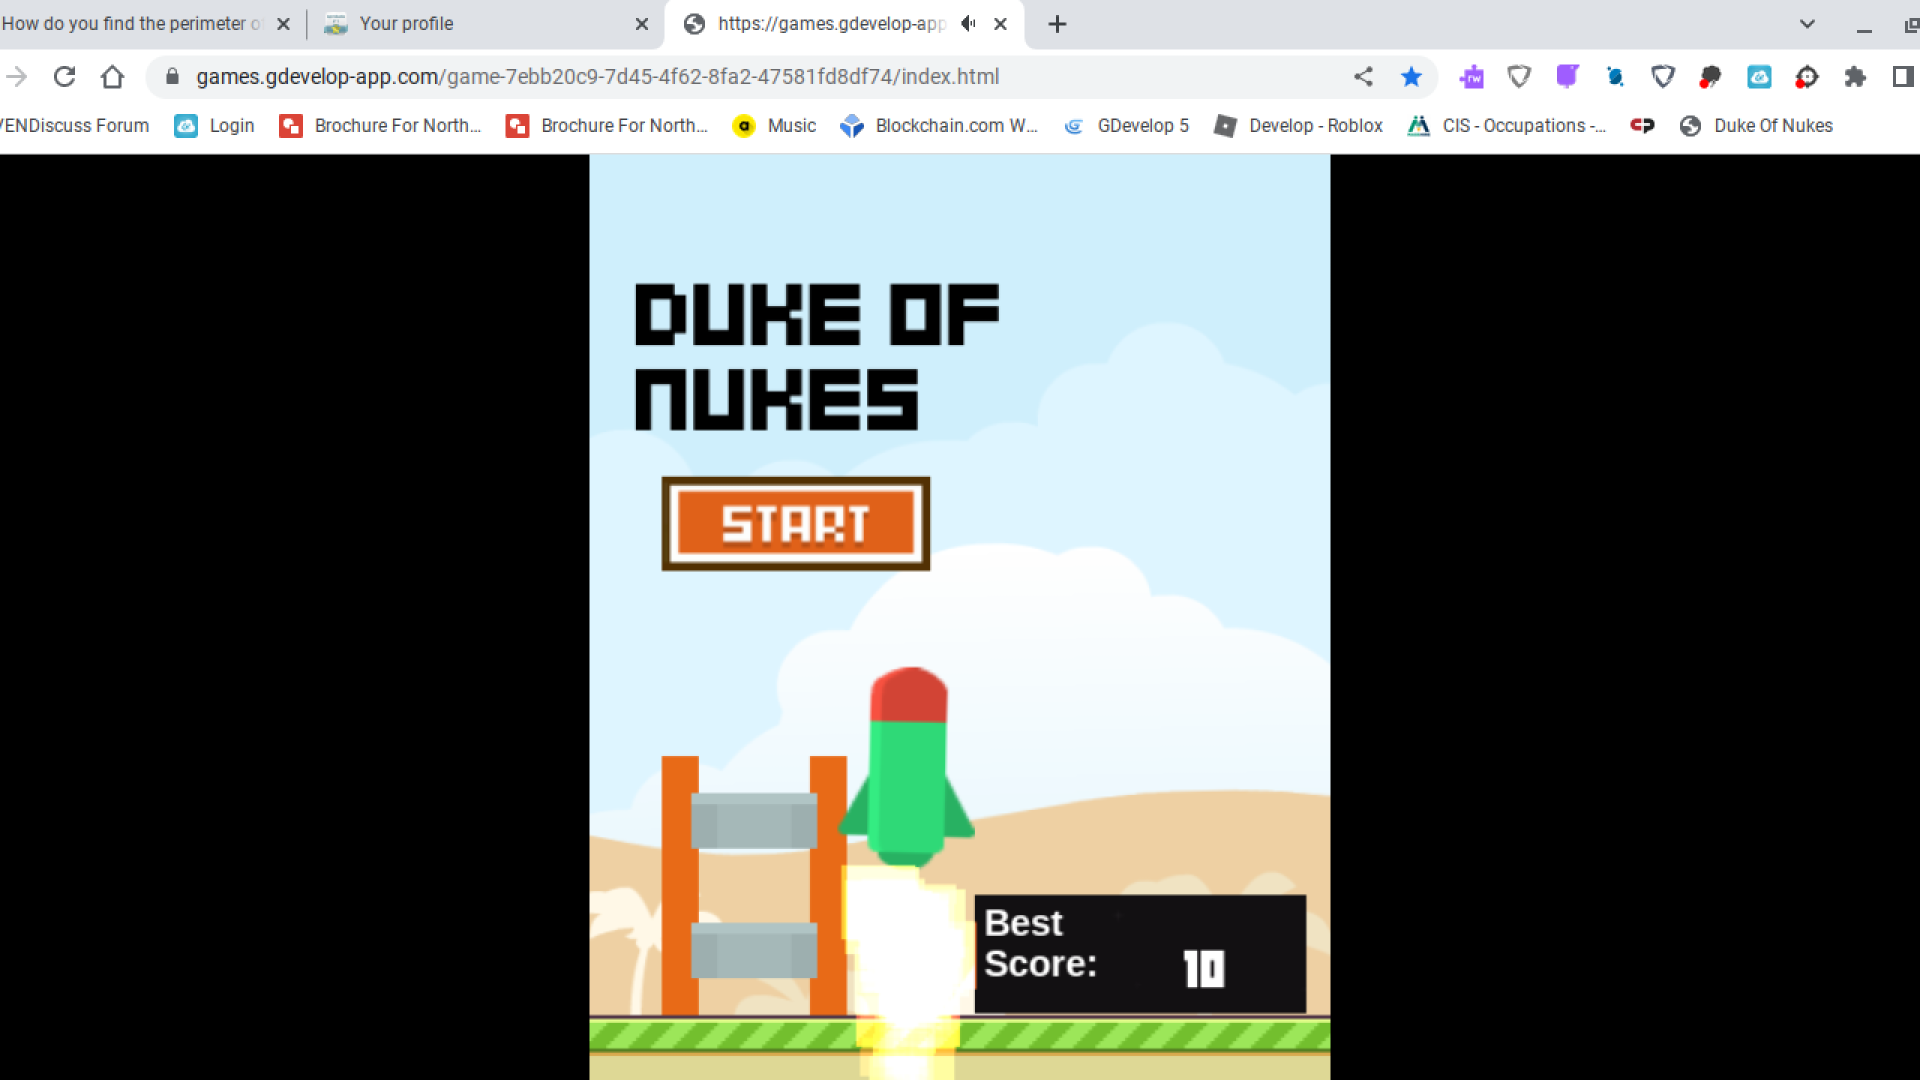 Duke Of Nukes